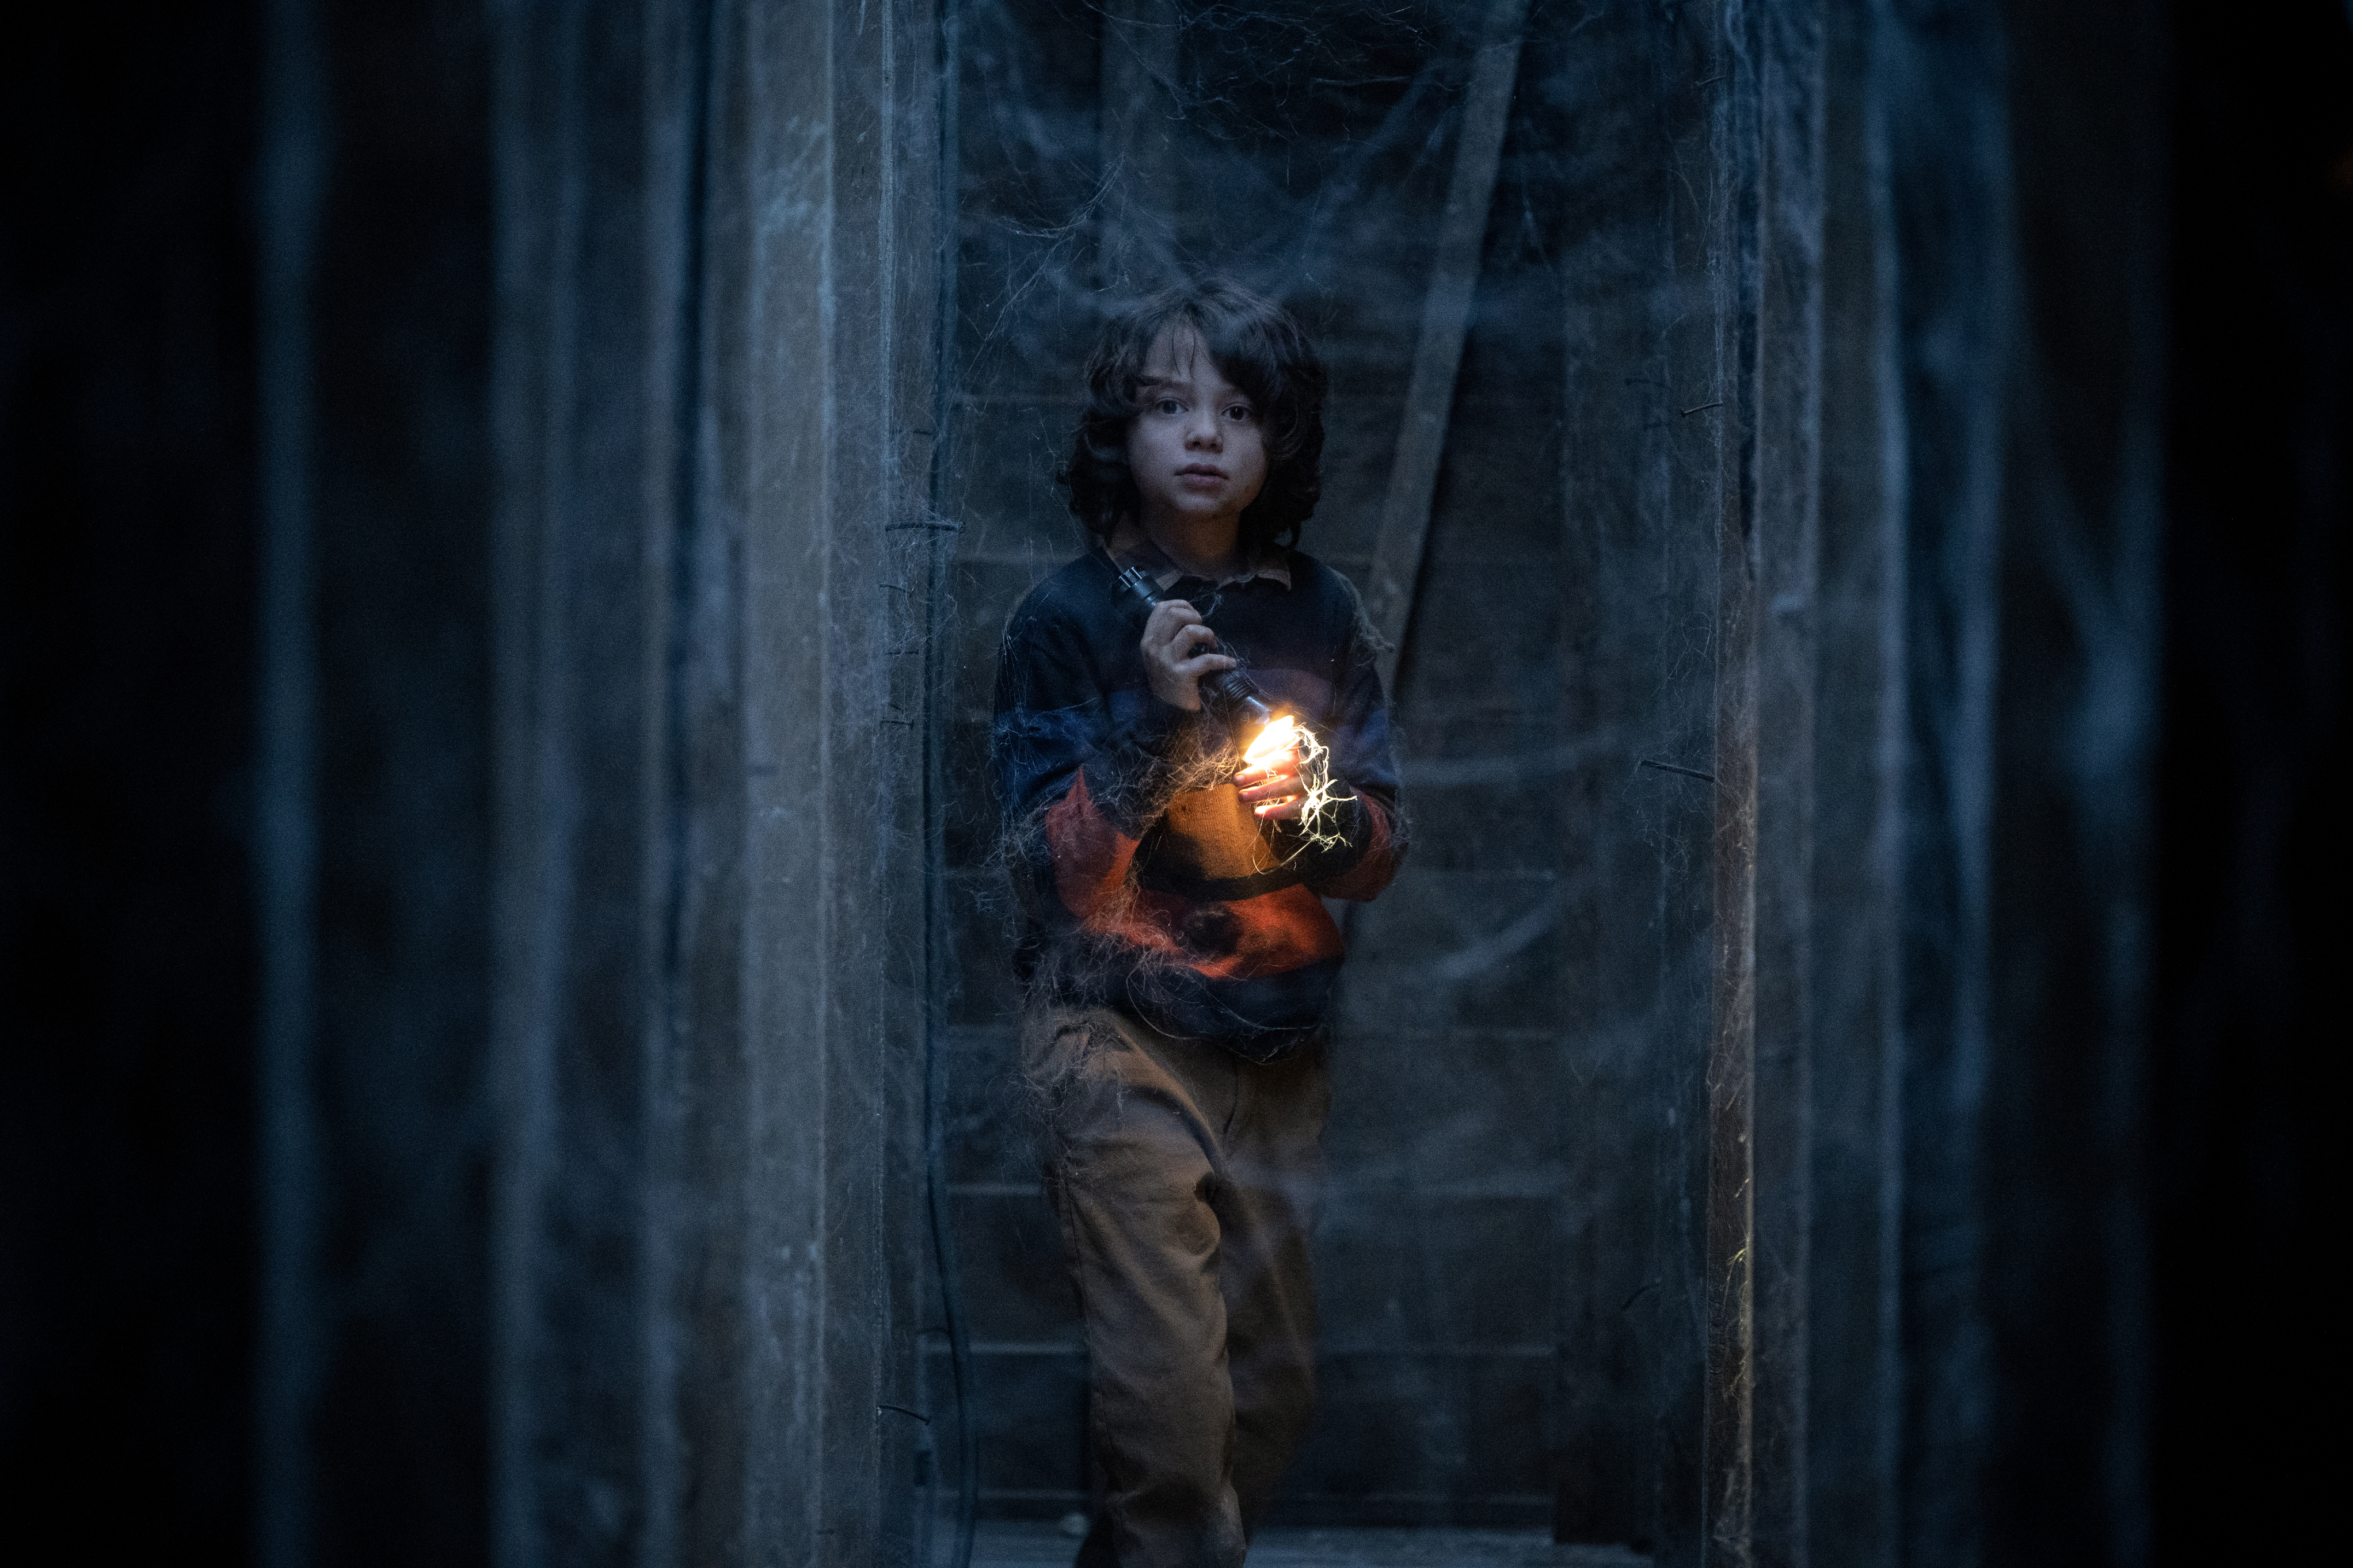 Woody Norman segura uma lanterna em um forro escuro em Cobweb.